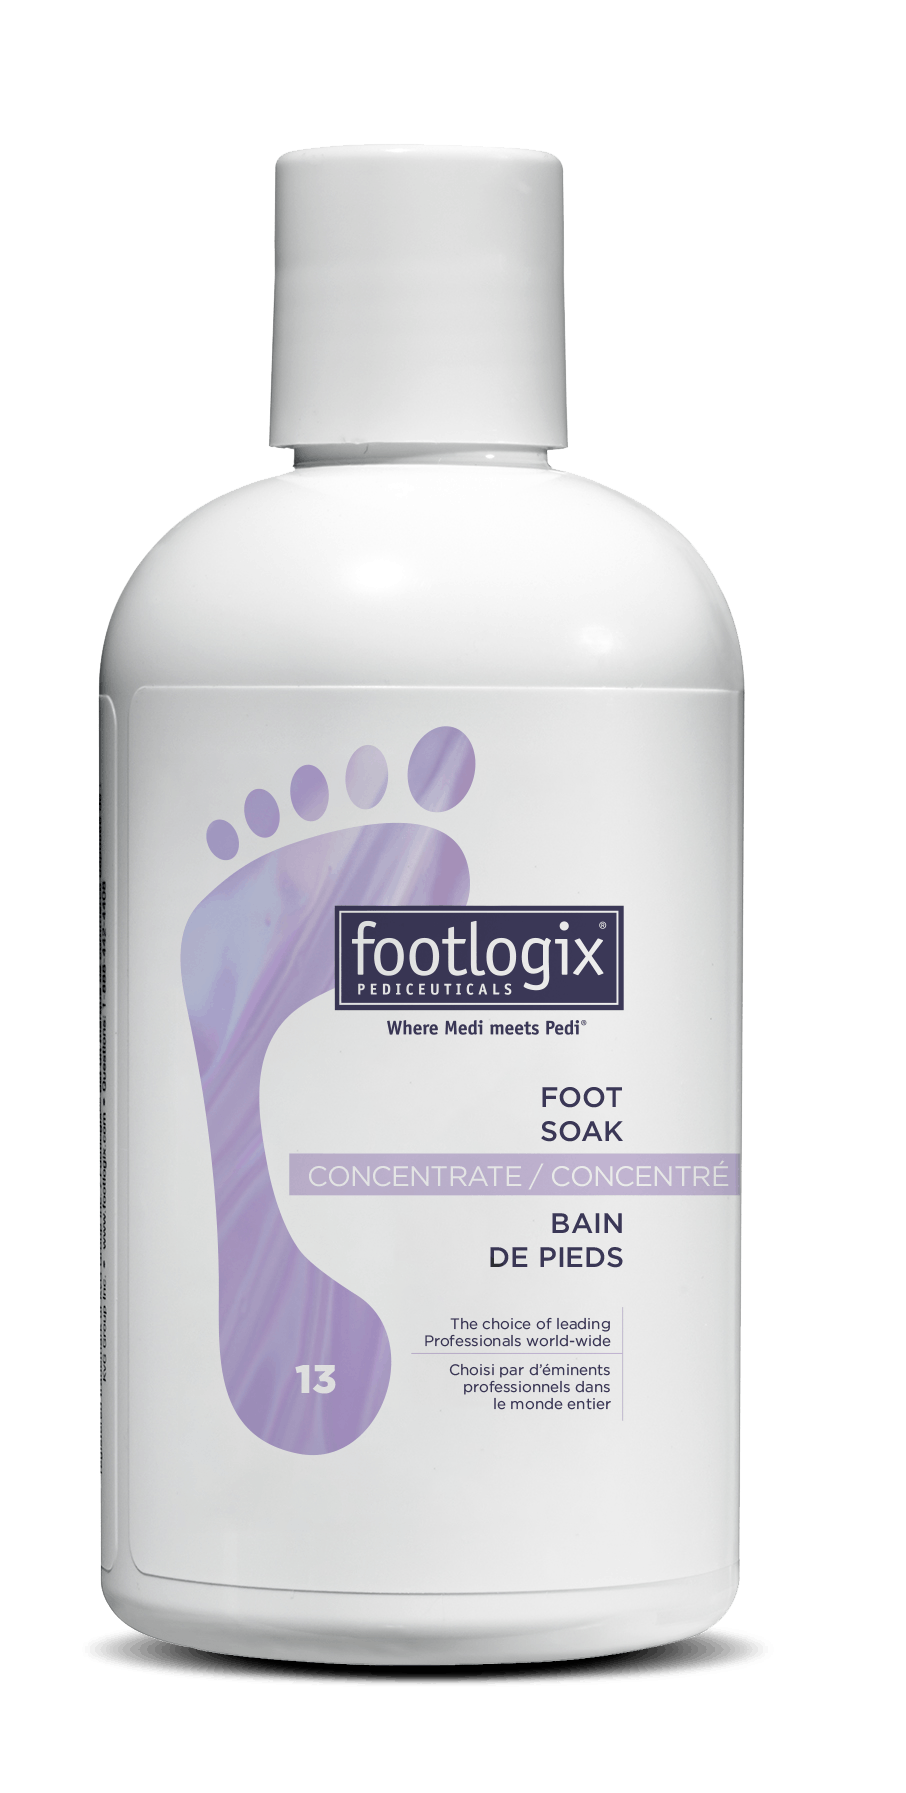 Footlogix Foot Soak (13)